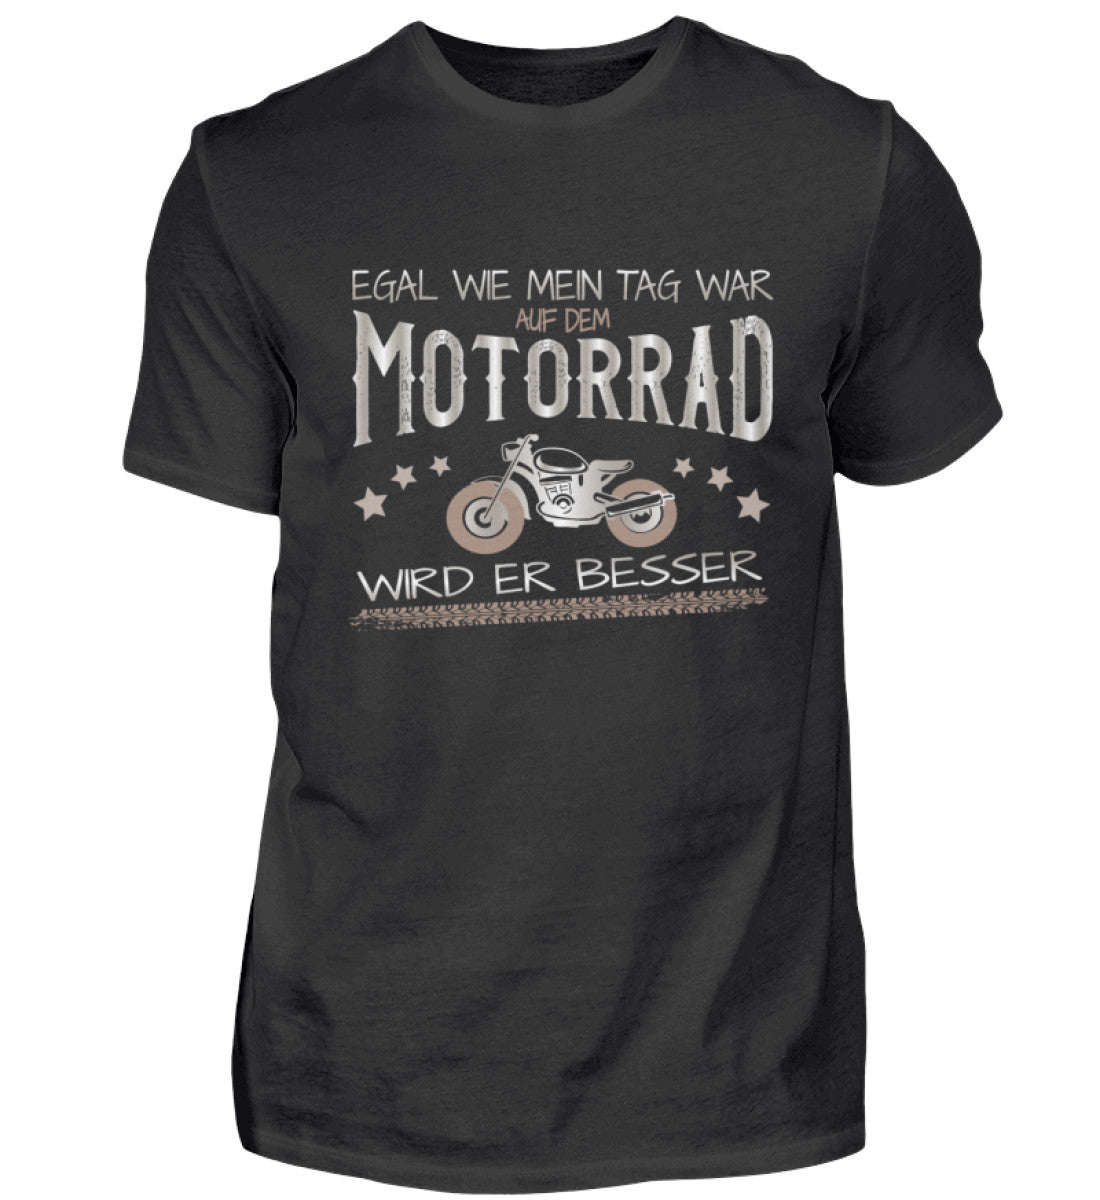 Ein T-Shirt für Motorradfahrer von Wingbikers mit dem Aufdruck, Egal wie mein Tag war, auf dem Motorrad wird er besser, in schwarz.